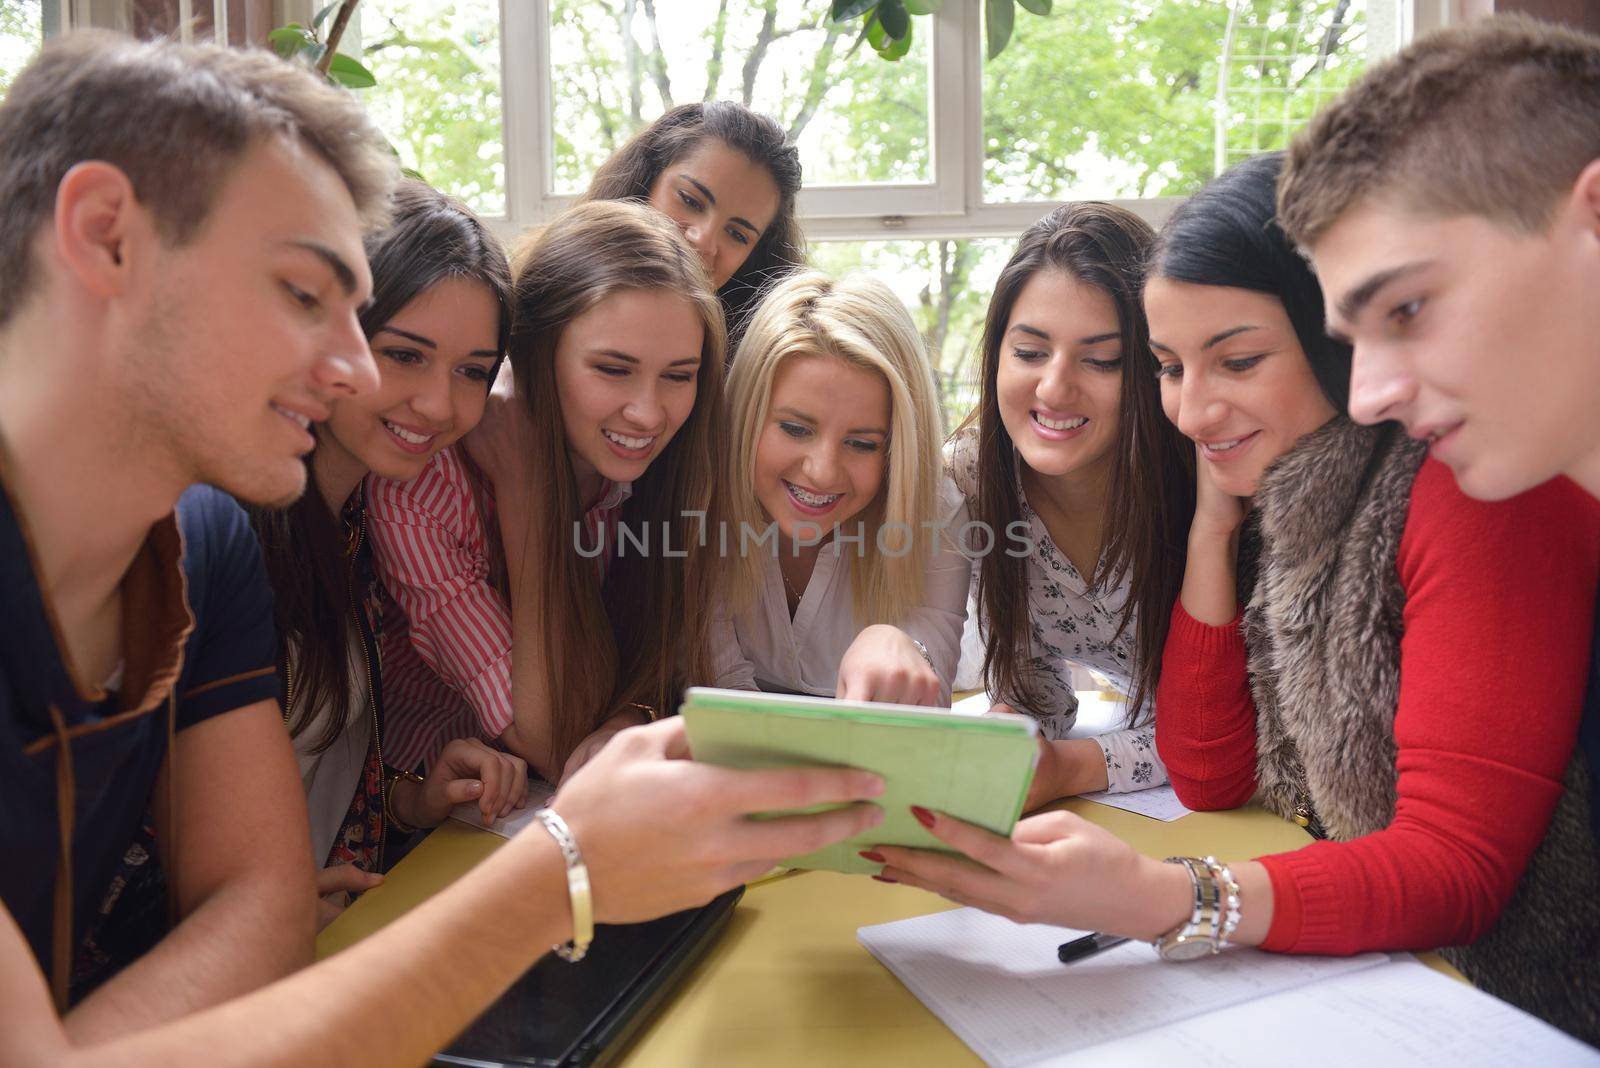 teens group in school by dotshock